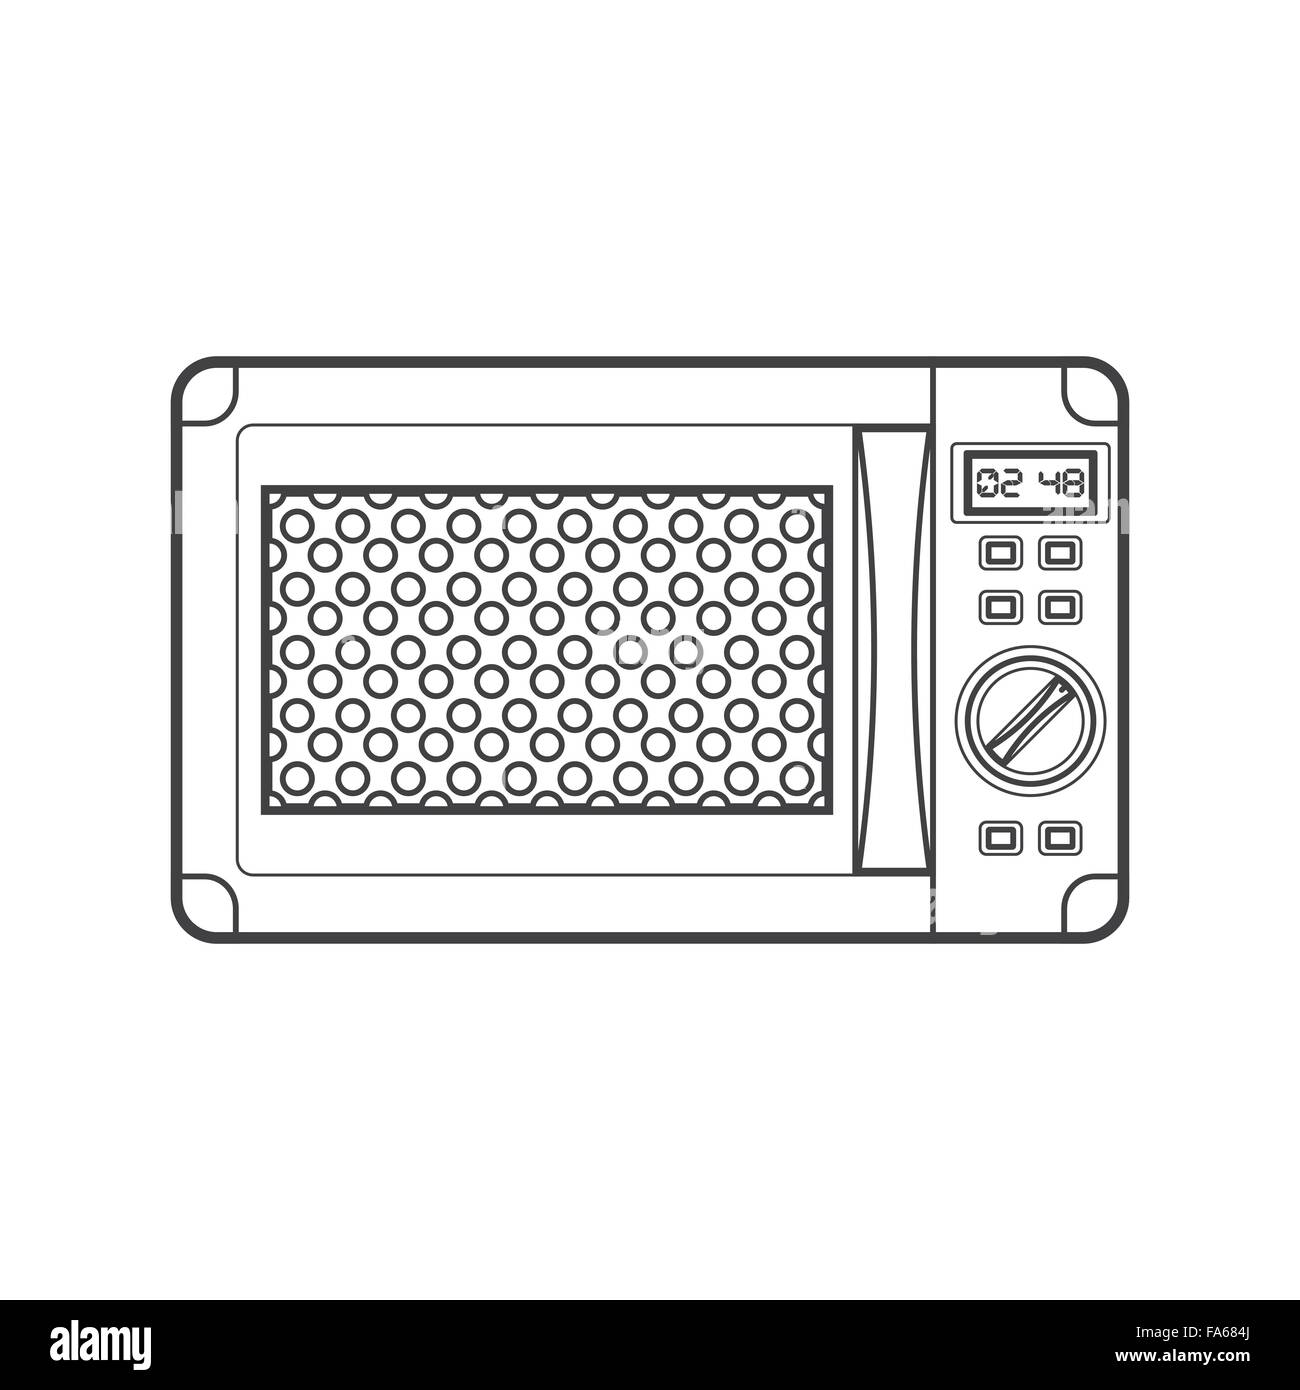 Vectores de horno de microondas vectores Imágenes de stock en blanco y  negro - Alamy